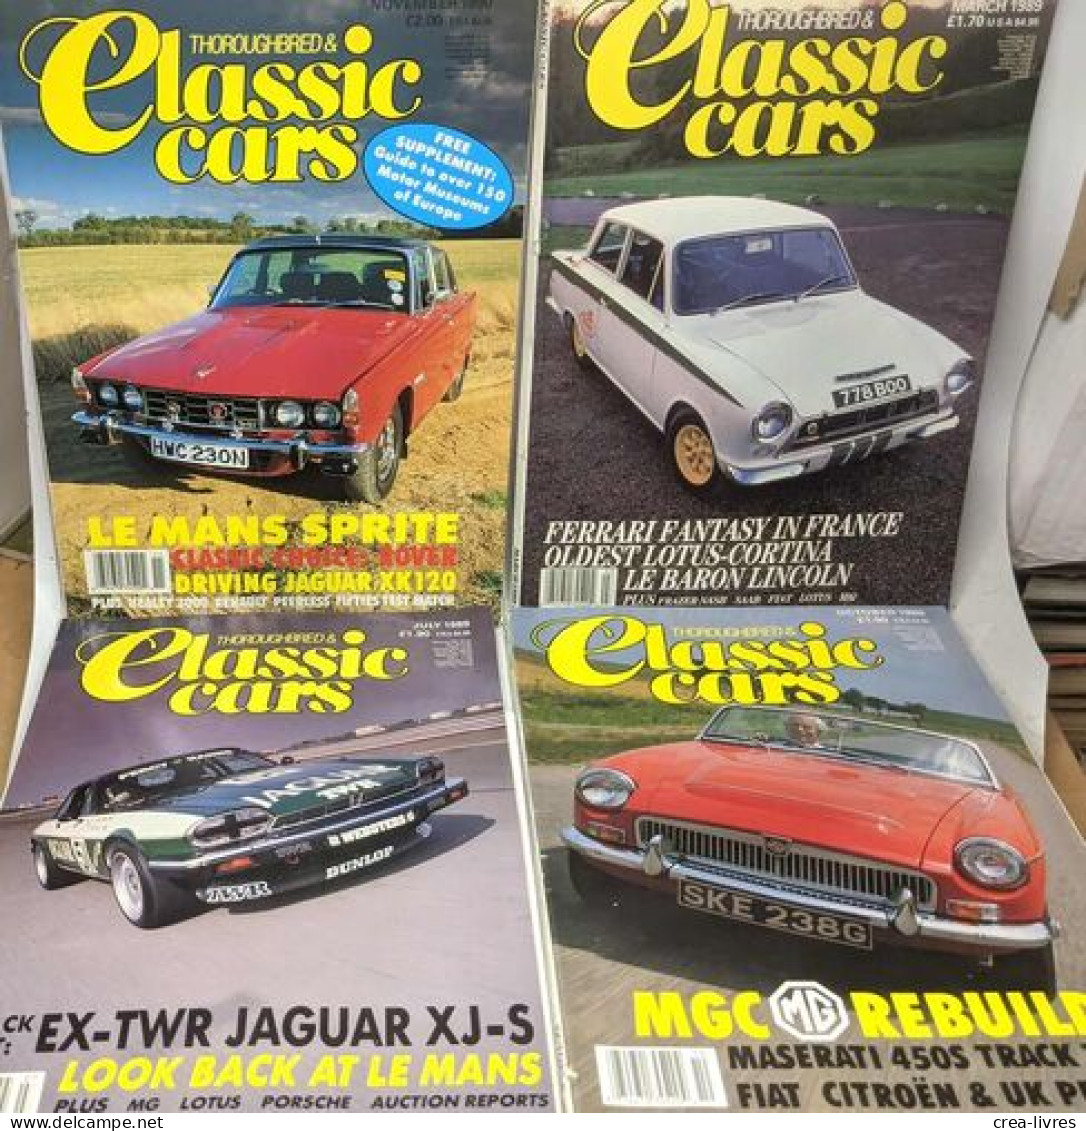 32 numéros de Thoroughbred & Classic Cars entre 1988 et 1994: Mar. Apr. Sept. Nov. Dec. 1988 + Jan. Feb.Mar. May. Jul. A